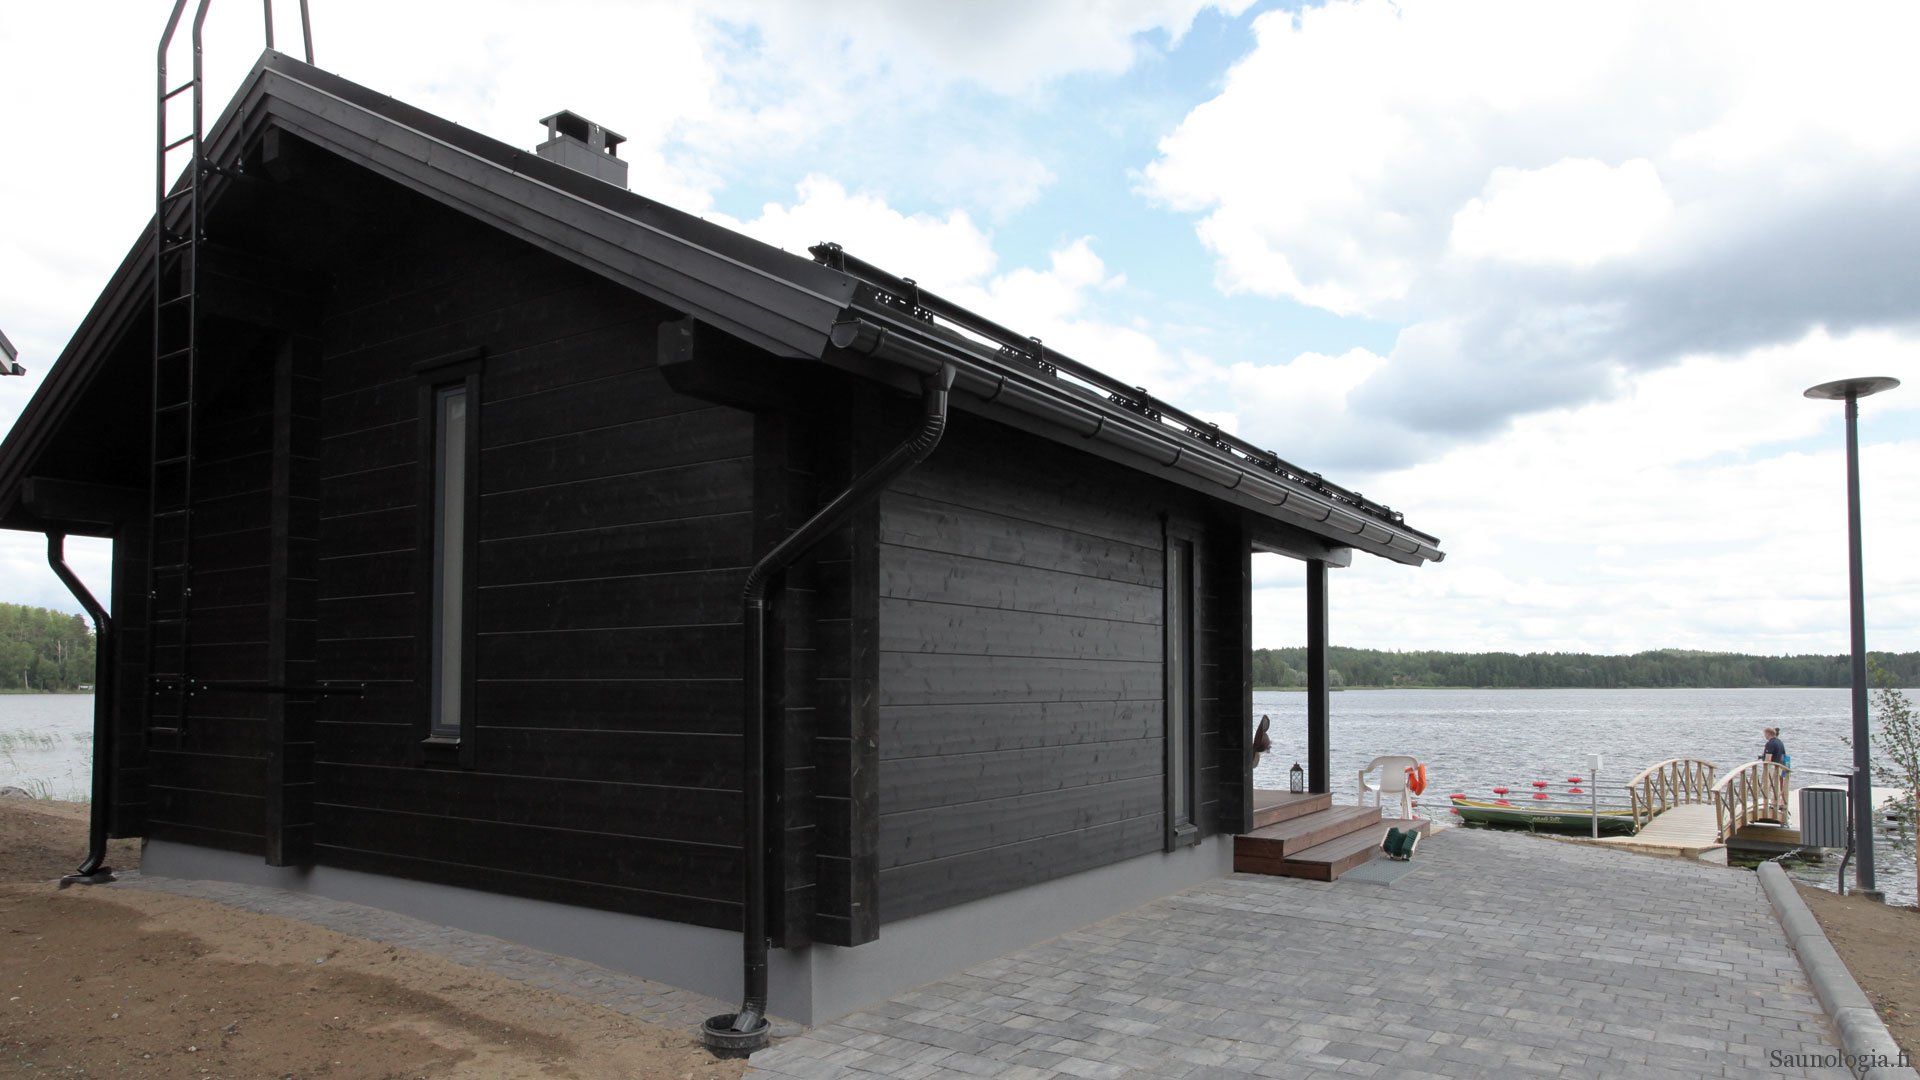 How big should a Finnish sauna be?